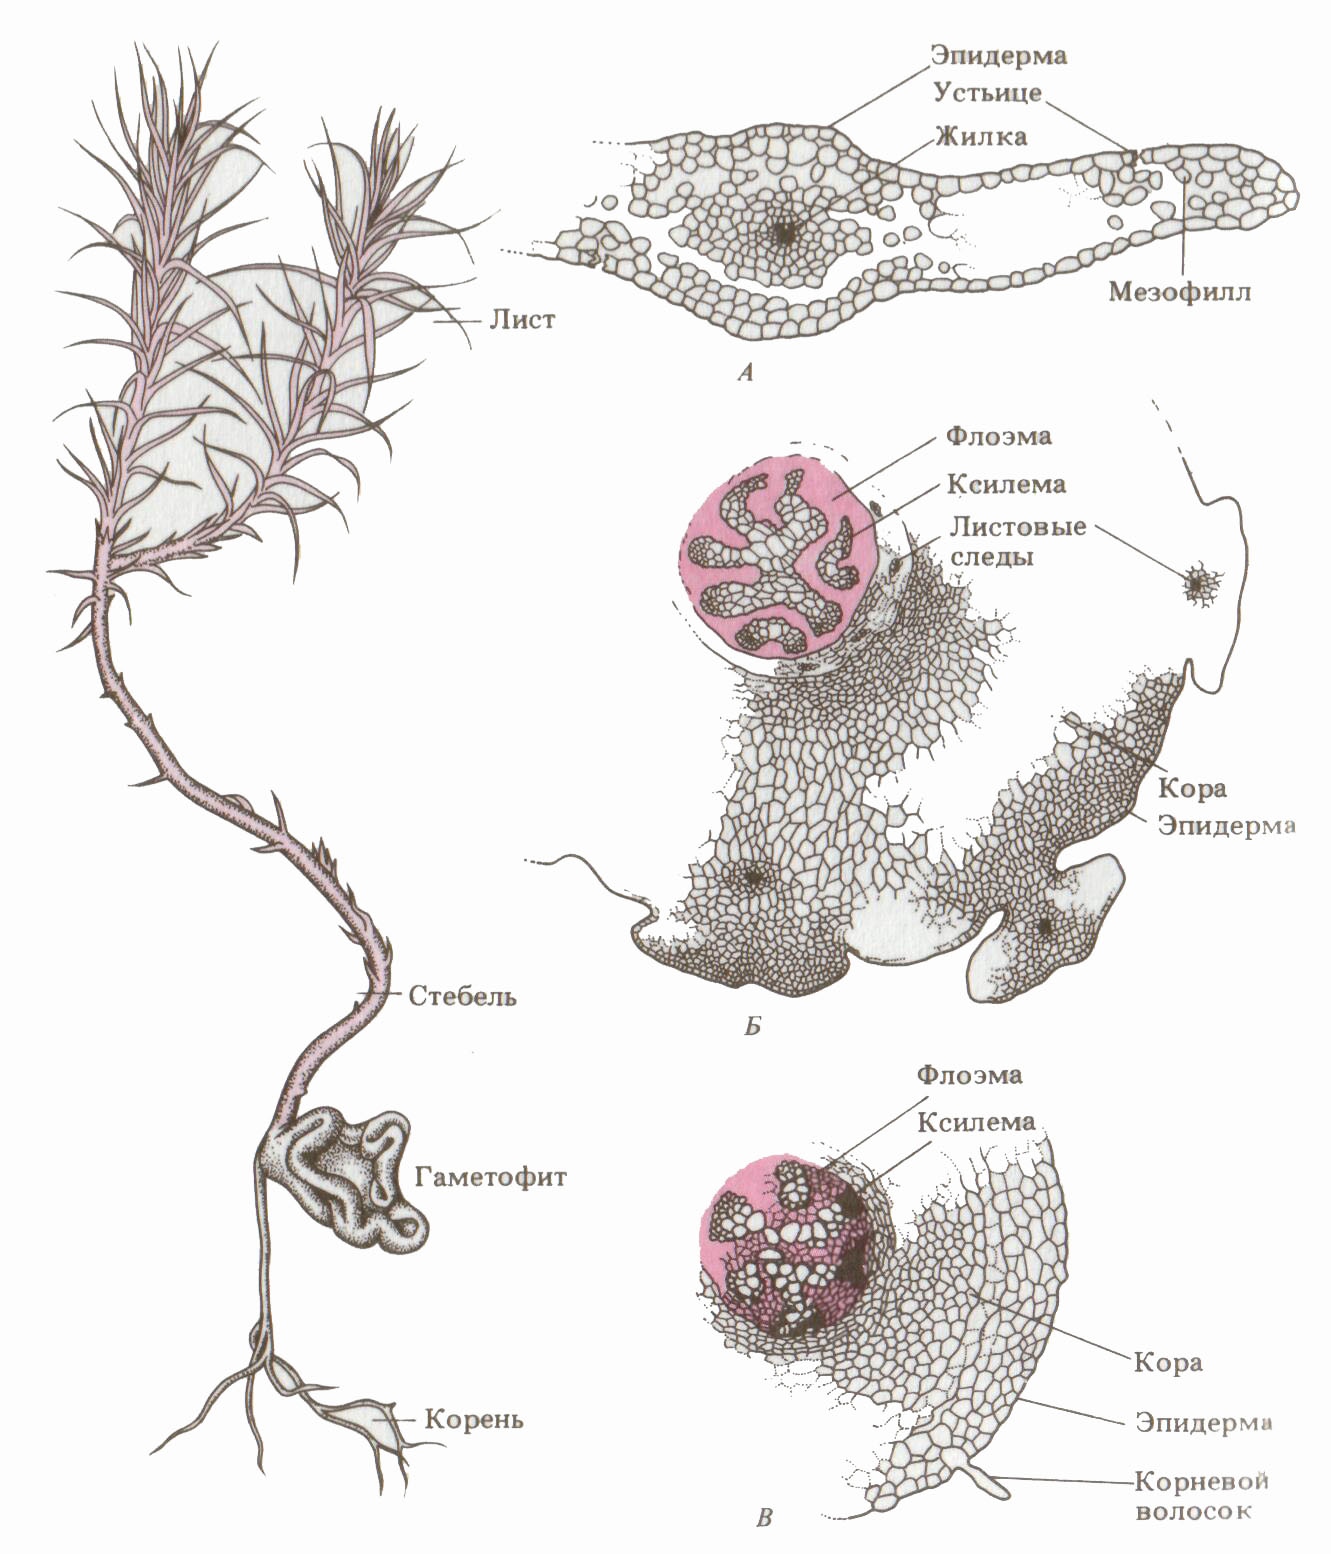 Анатомическое строение стебля плауна